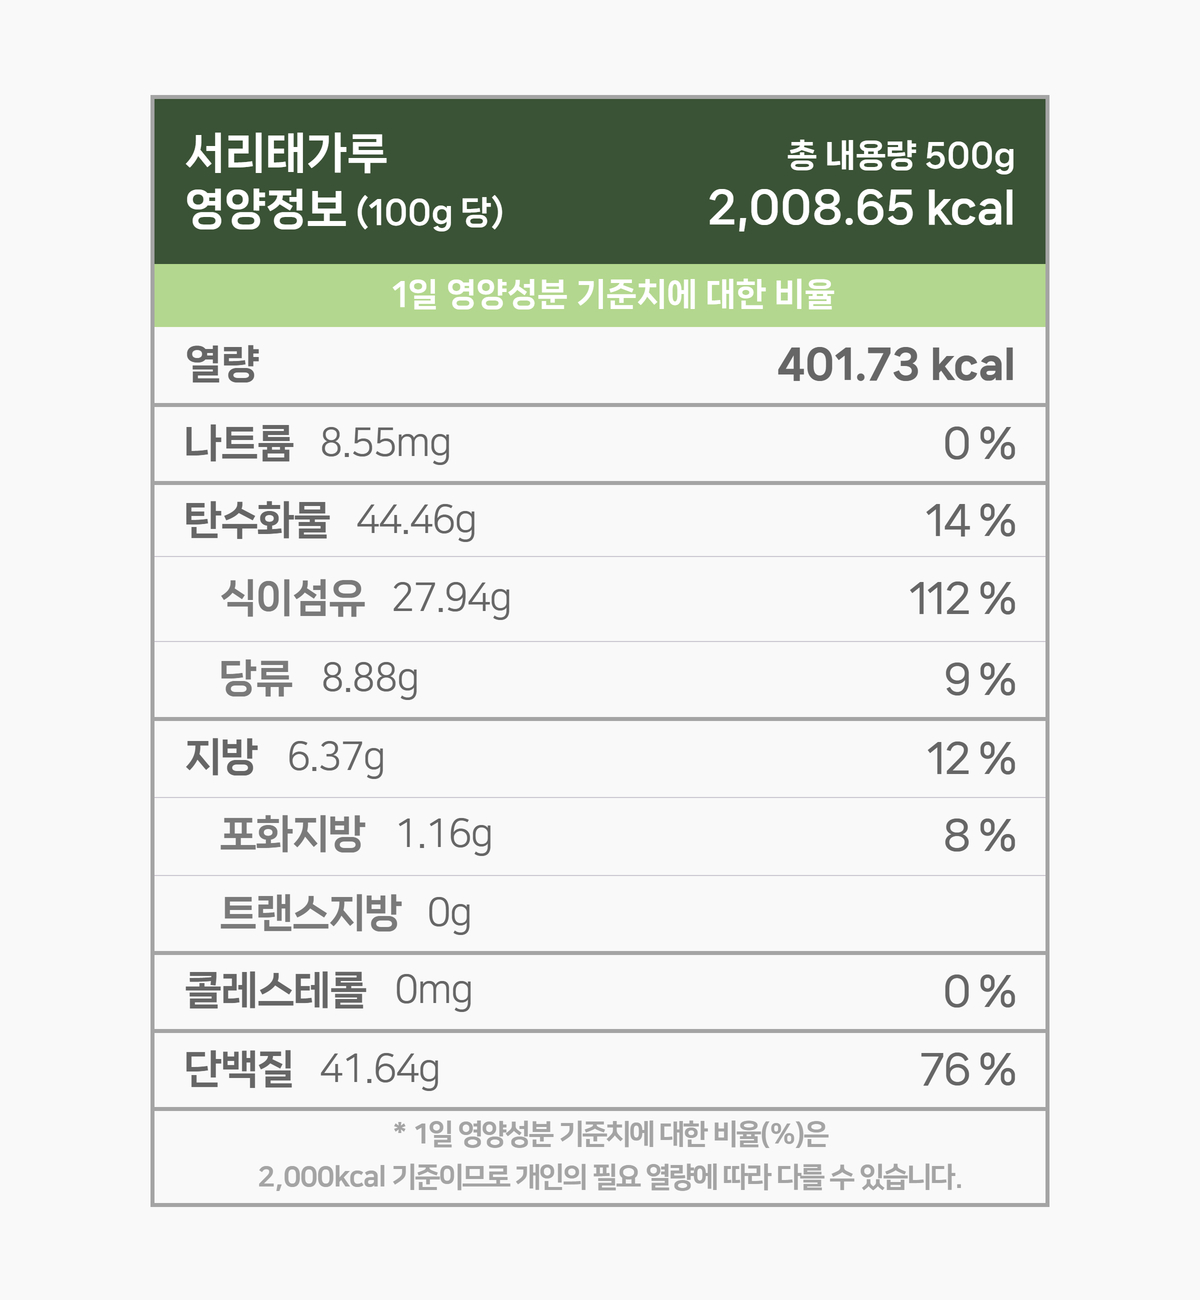 국산 서리태가루 500g 영양성분 표. 100g 기준 401.73 칼로리. 나트륨은 8.55mg 함유되어 있으며 1일 영양성분 기준치에 대한 비율은 0%입니다. 탄수화물 44.46g 14%, 당류 8.88g 9%, 지방 6.37g 12%, 포화지방 1.16g 8%, 단백질 41.64g 76%. 1일 영양성분 기준치에 대한 비율은 2000칼로리 기준이므로 개인의 필요한 열량에 따라 다를 수 있습니다.